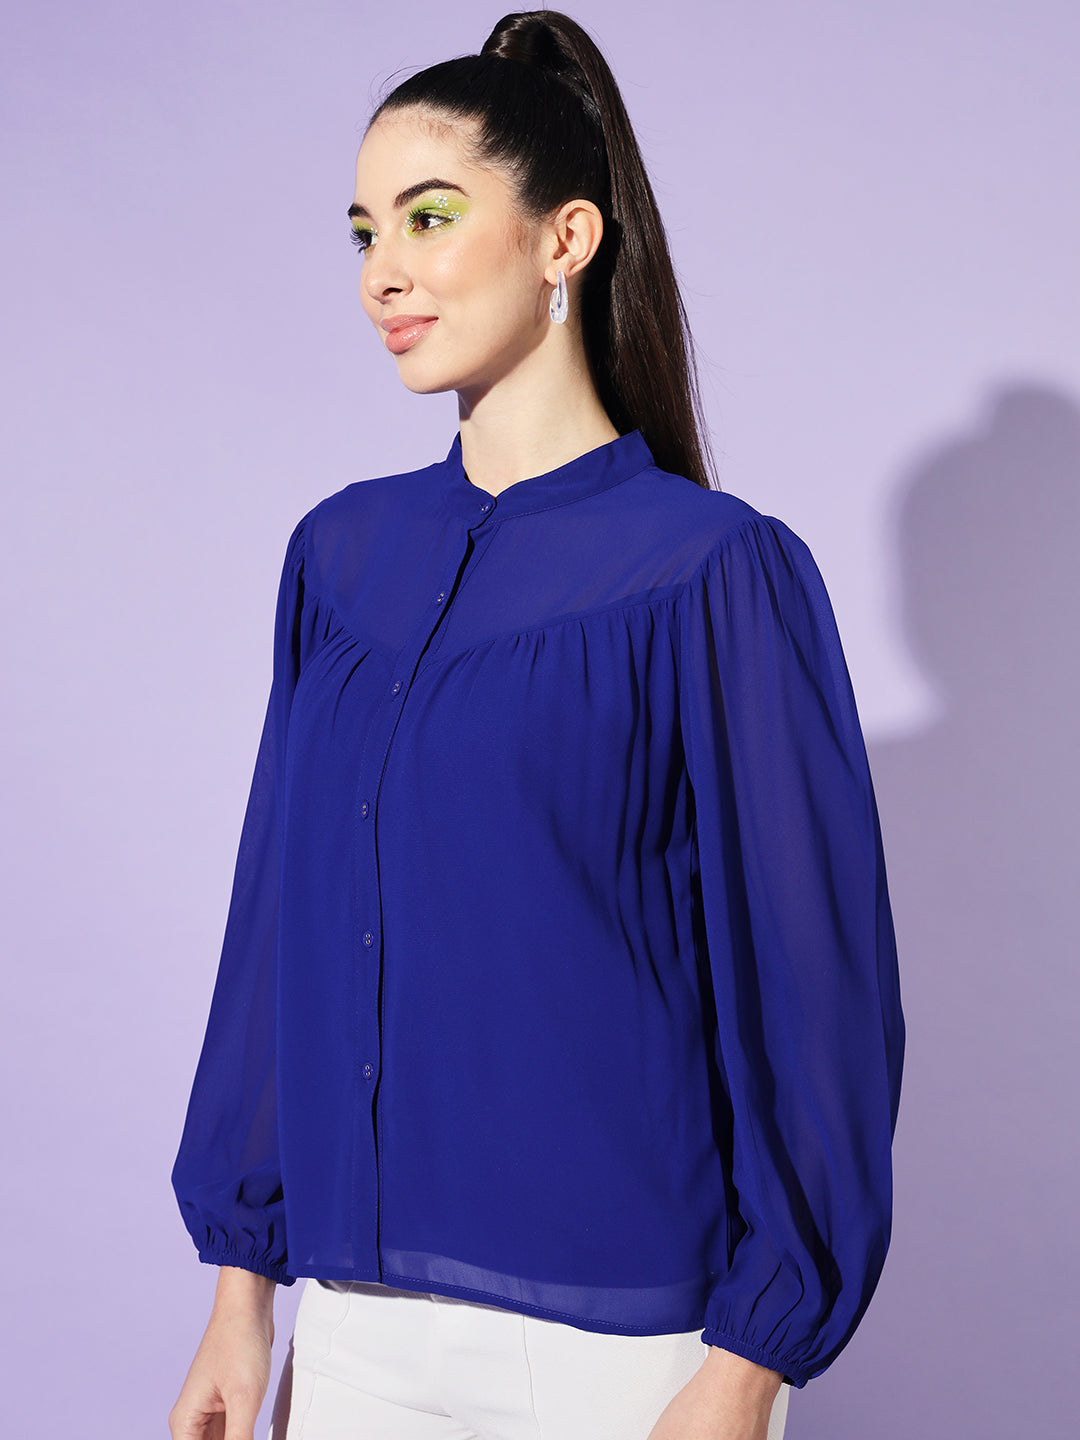 Women Blue Solid Mandarin Collar Shirt Style Top